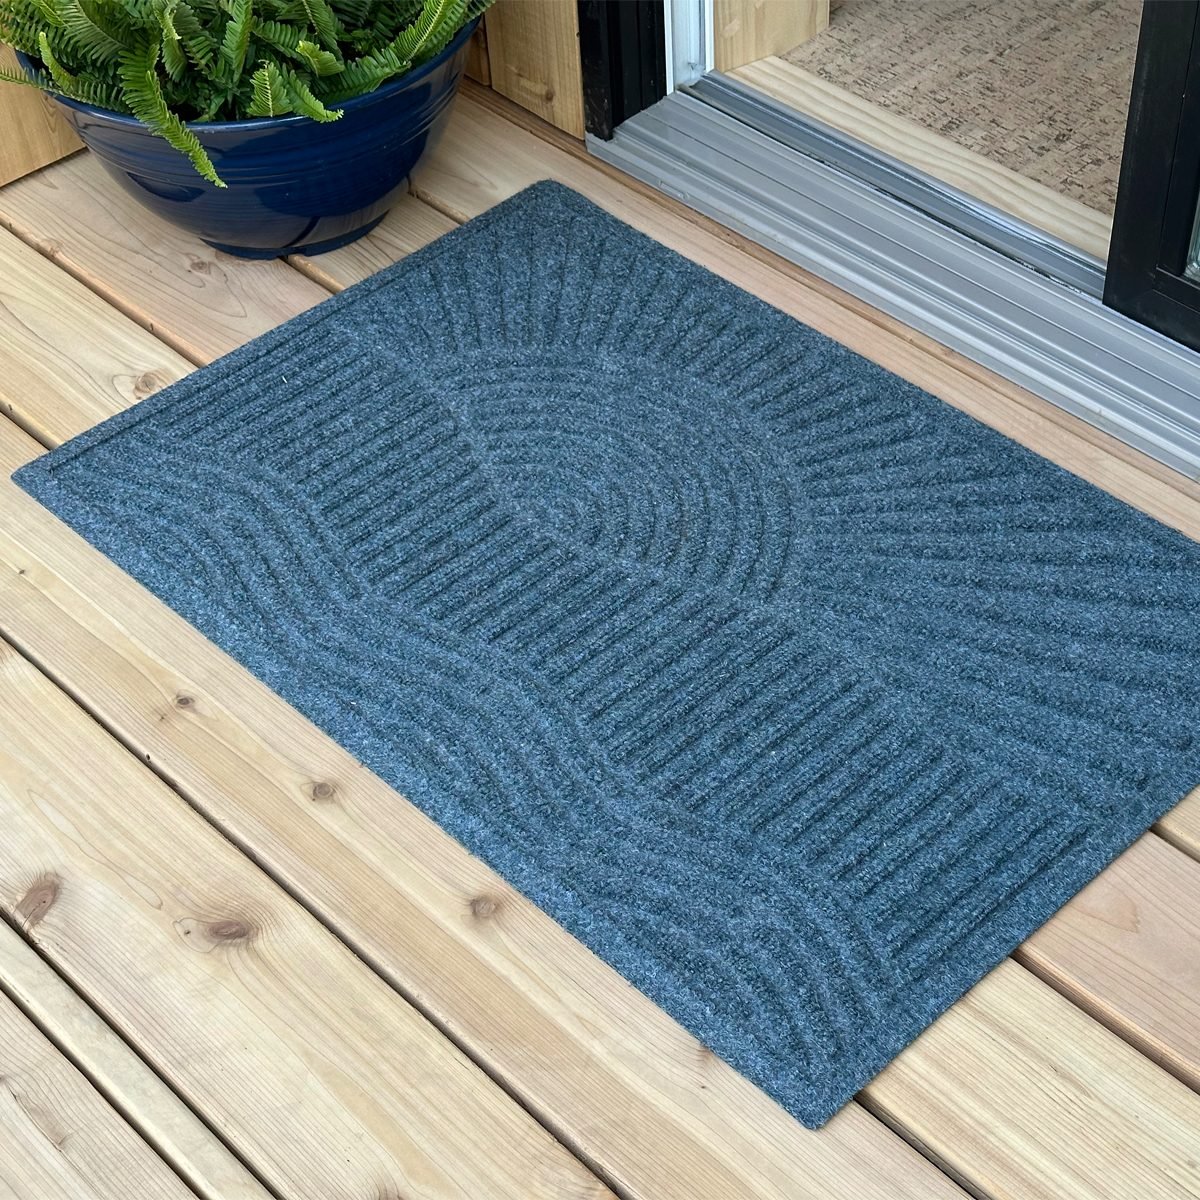 Everyspace Recycled Waterhog Doormat